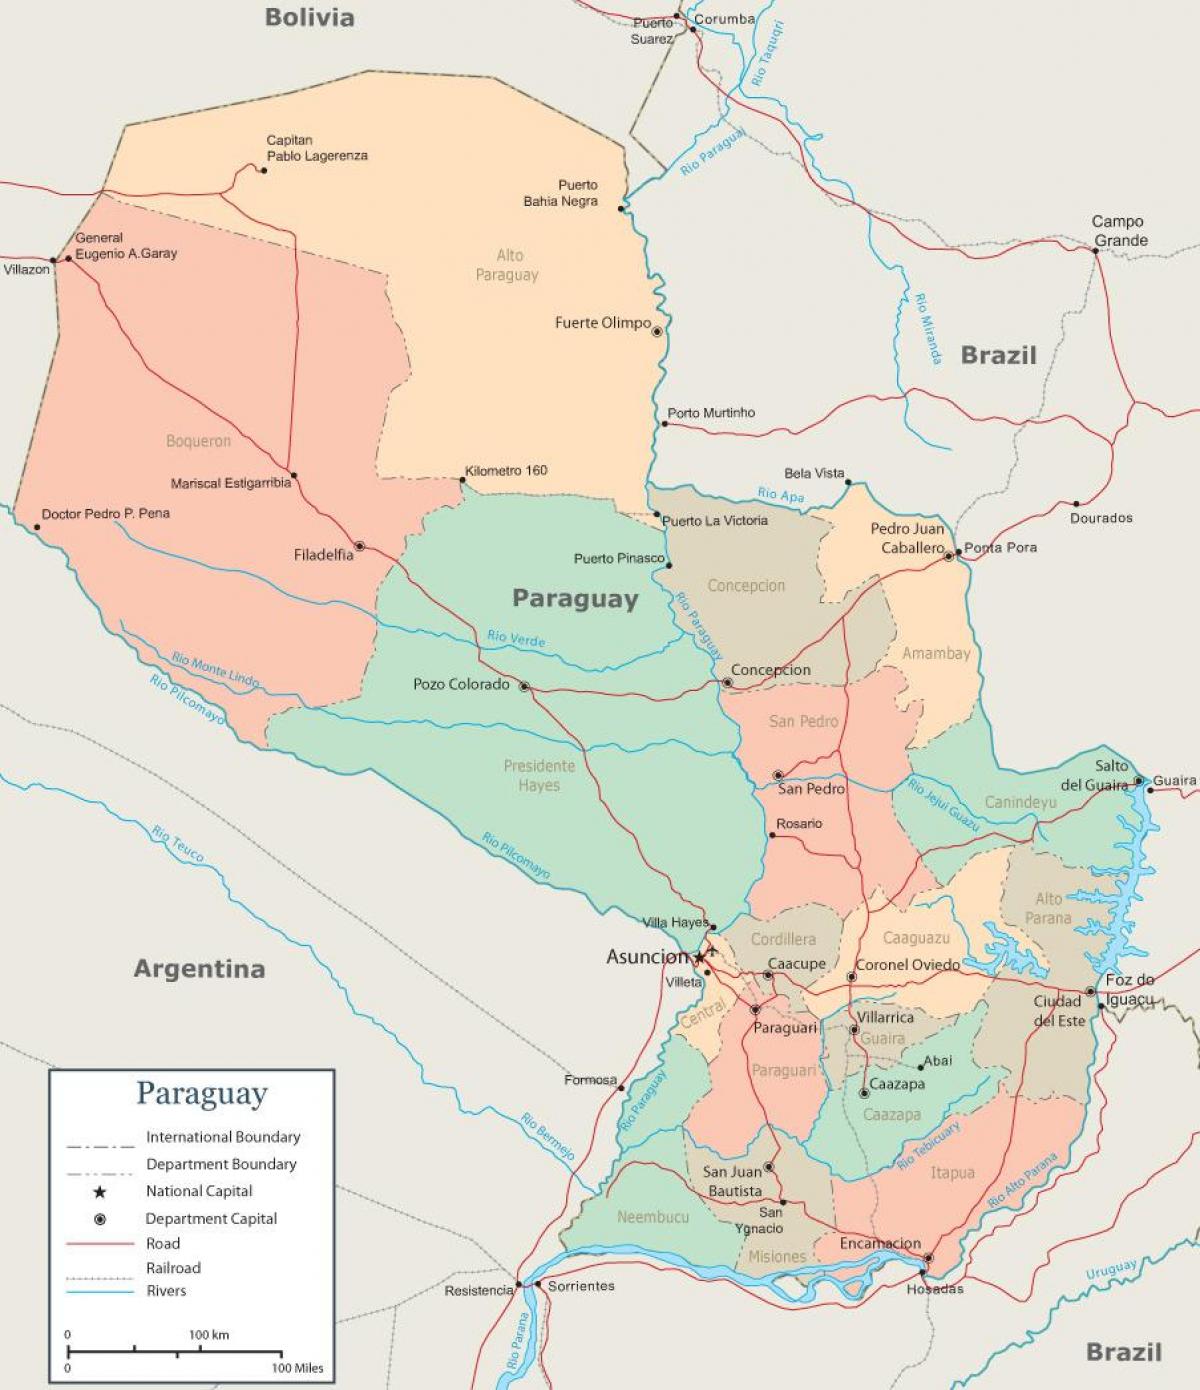 Paraguai assumpció mapa